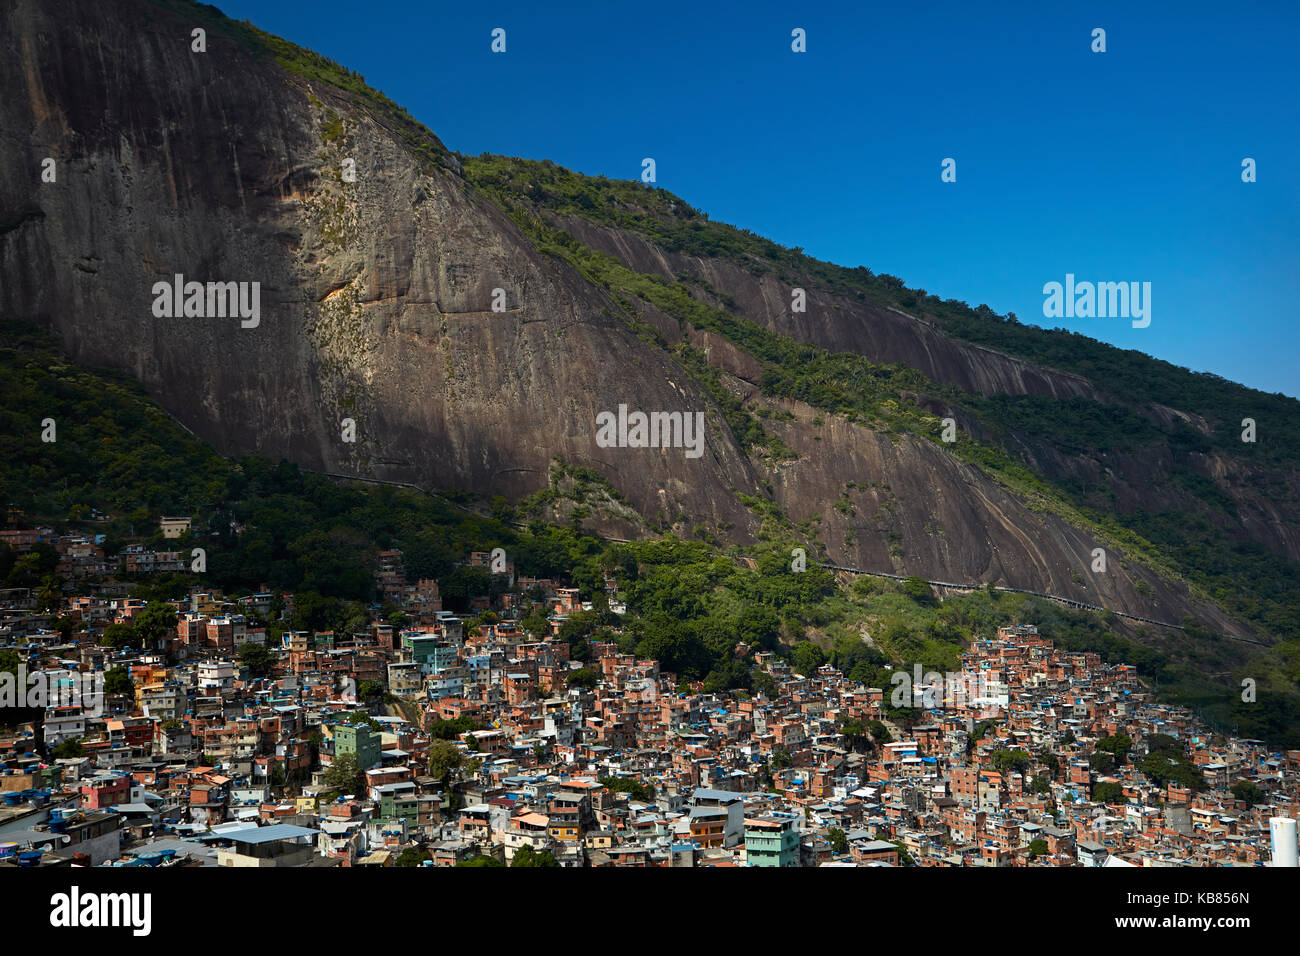 Rocinha favela (Brazil's largest favela), and Morro Dois Irmãos (rock hill), Rio de Janeiro, Brazil, South America Stock Photo